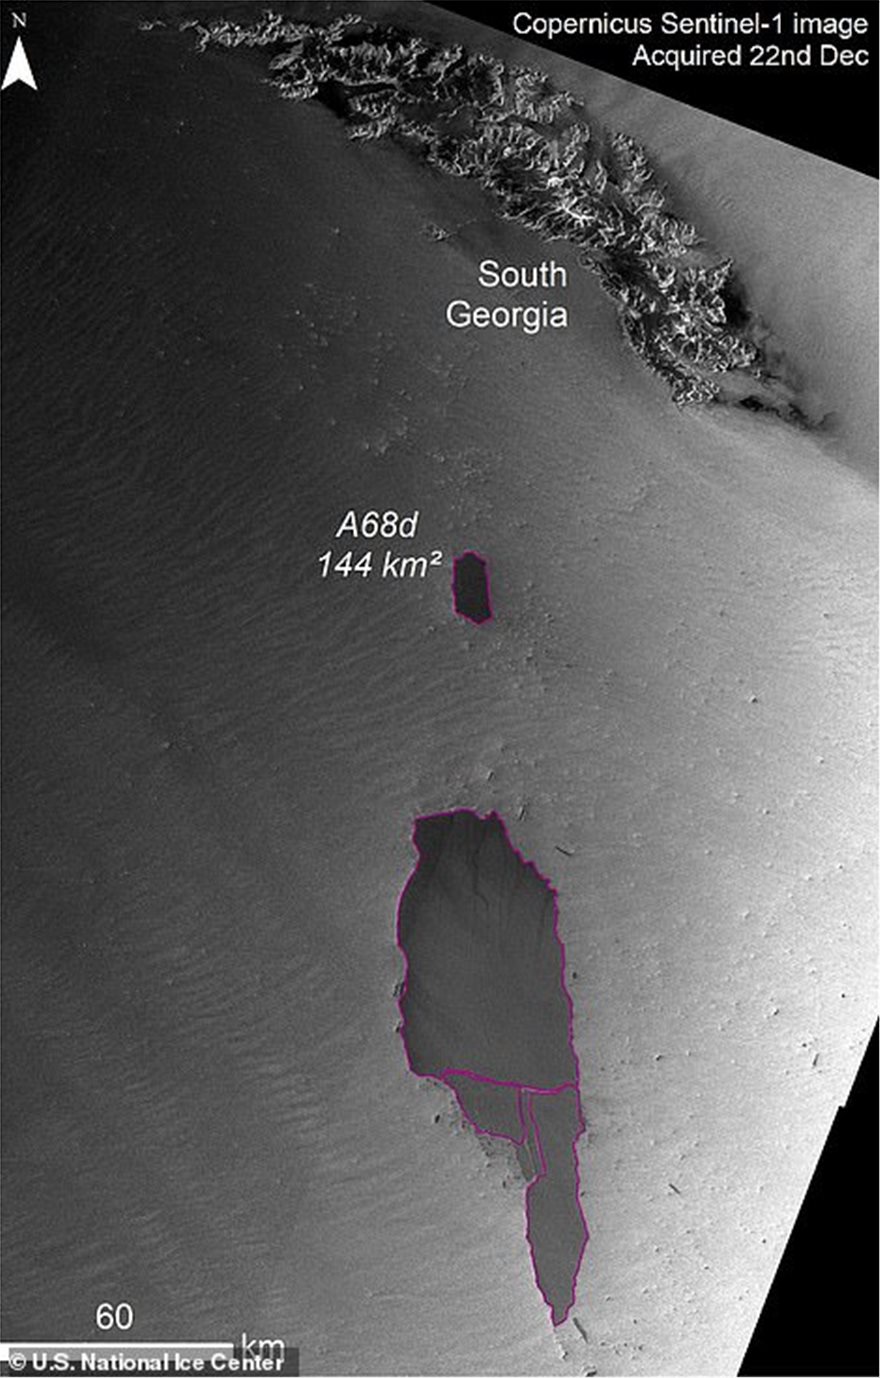 Απίστευτο θέαμα στον Νότιο Ατλαντικό: Γιγαντιαίο παγόβουνο σπάει σε κομμάτια - Φωτογραφία 8